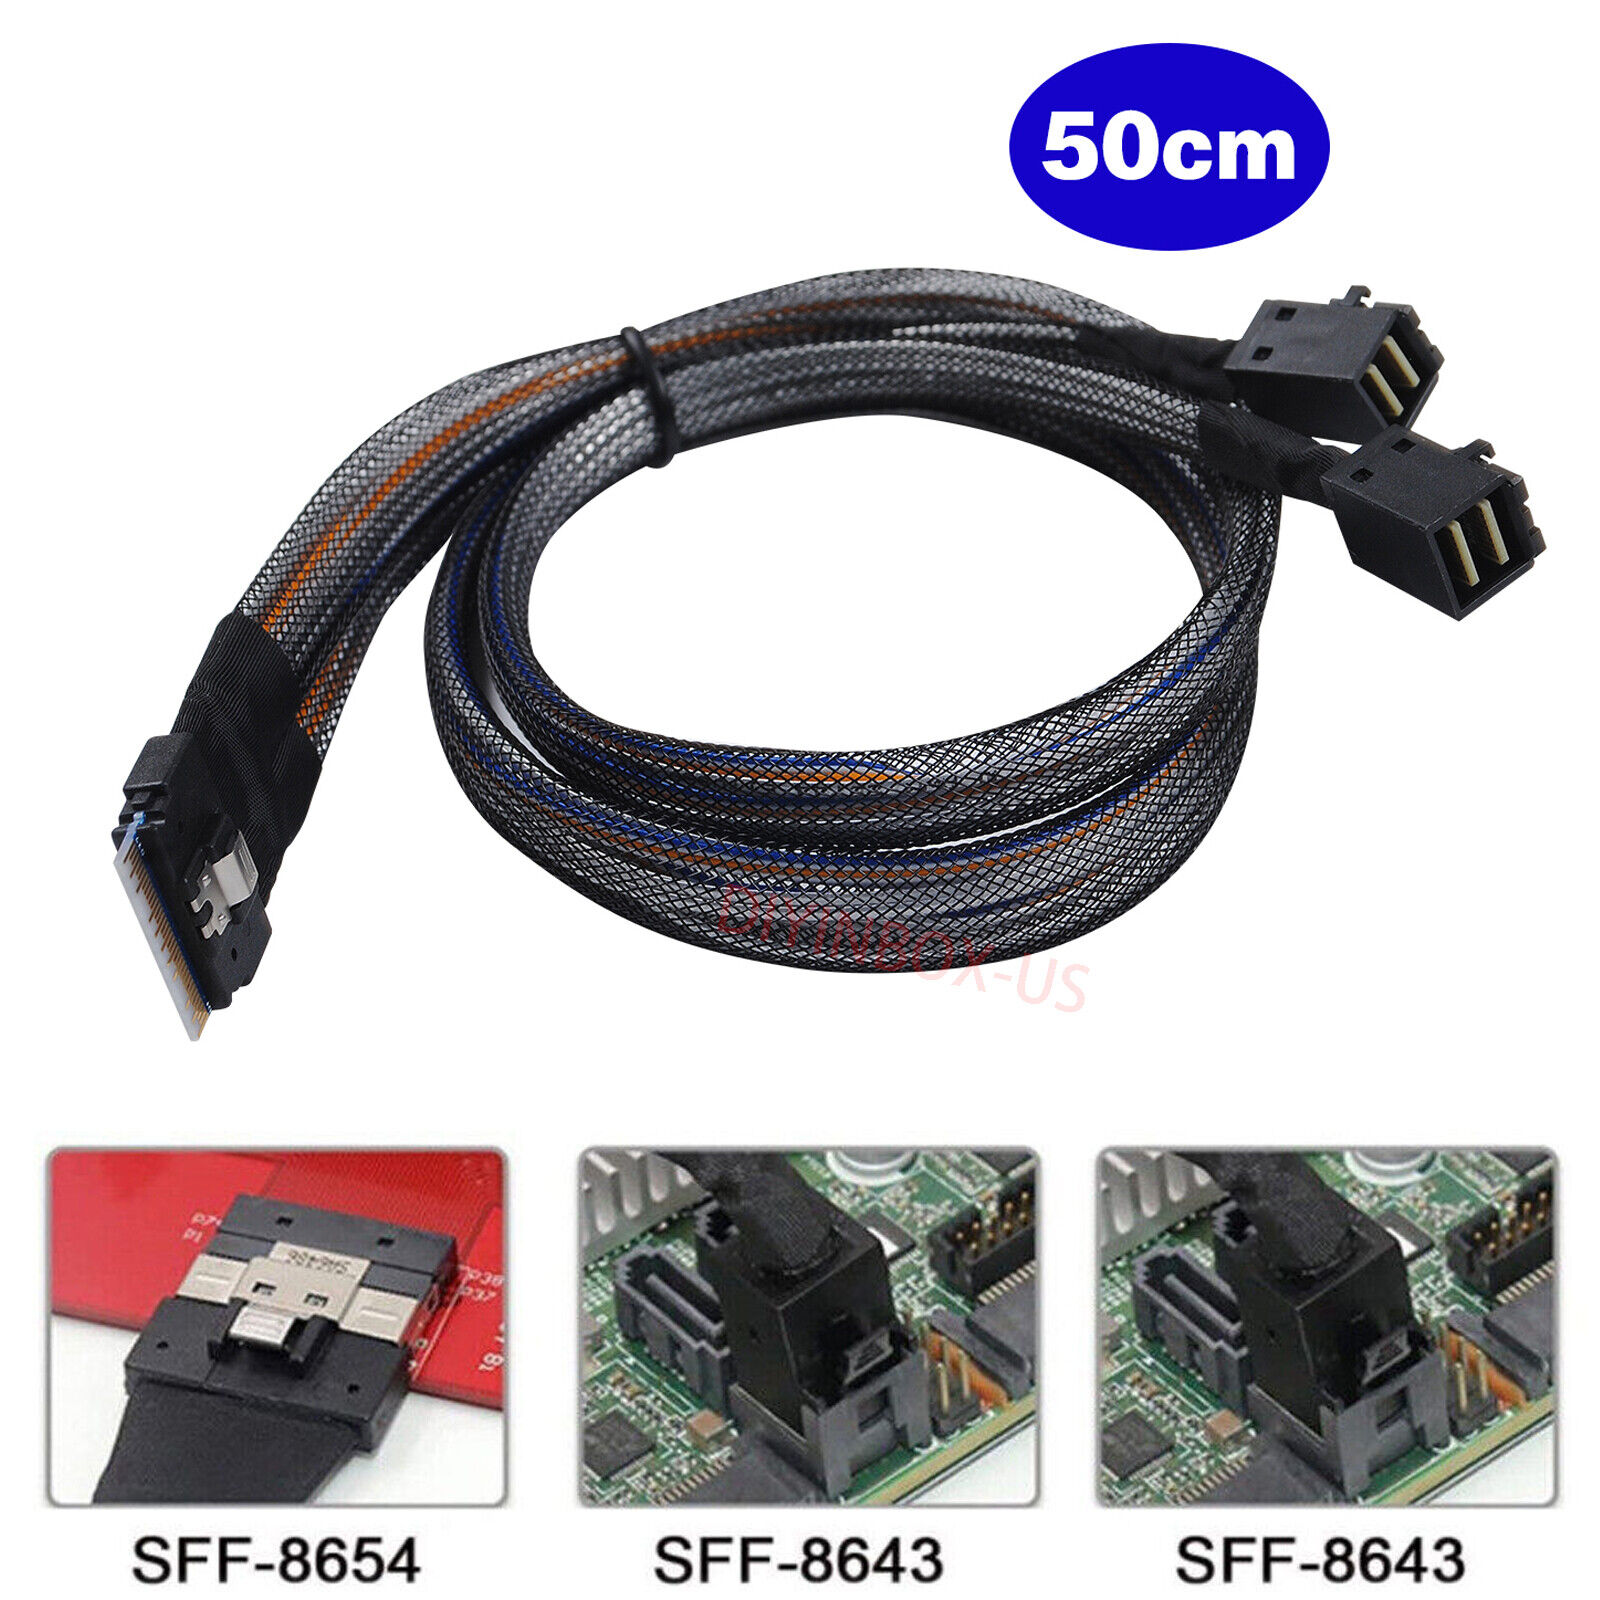 Mini Slim SAS SFF-8654 8i 4.0 to 2X SAS SFF-8643 Server Connection Cable 50cm